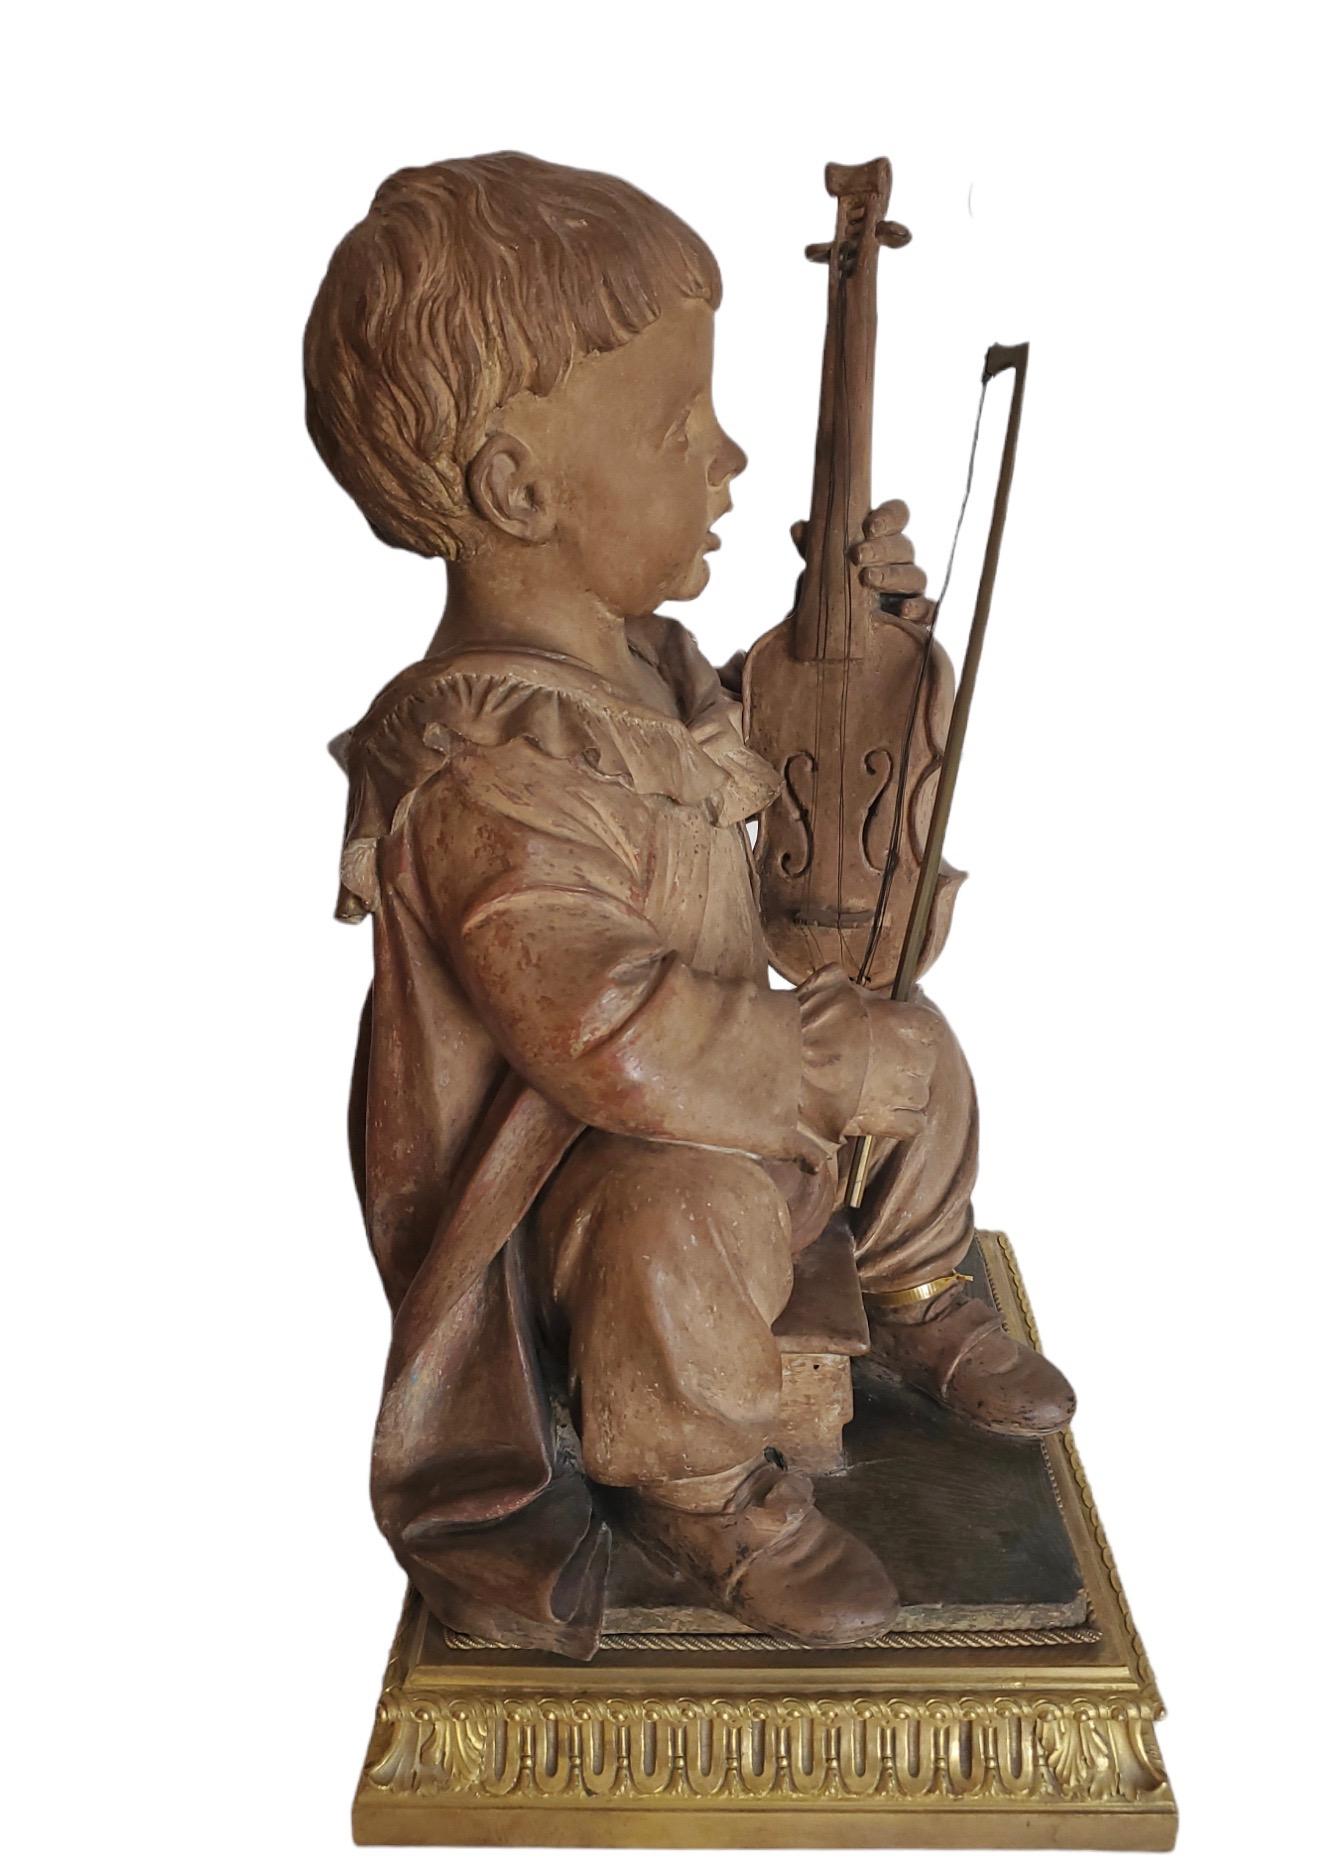 Figurine en terre cuite finement sculptée représentant un garçon jouant du violon. Elle repose sur un socle séparé en bronze doré français finement moulé.